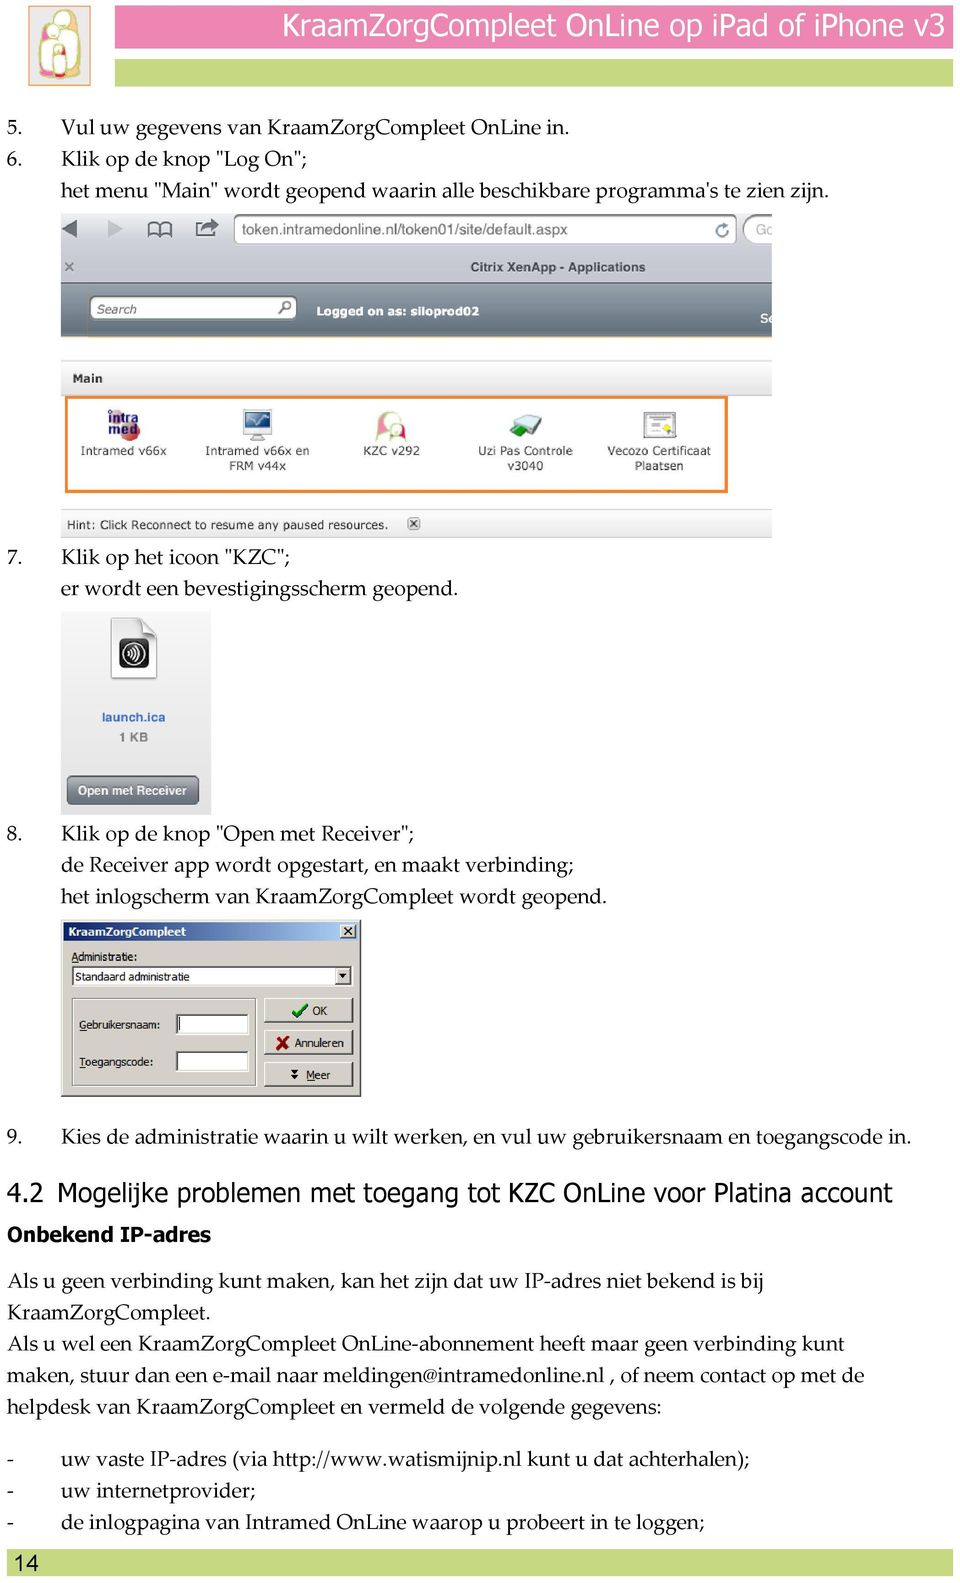 Klik op de knop "Open met Receiver"; de Receiver app wordt opgestart, en maakt verbinding; het inlogscherm van KraamZorgCompleet wordt geopend. 9.